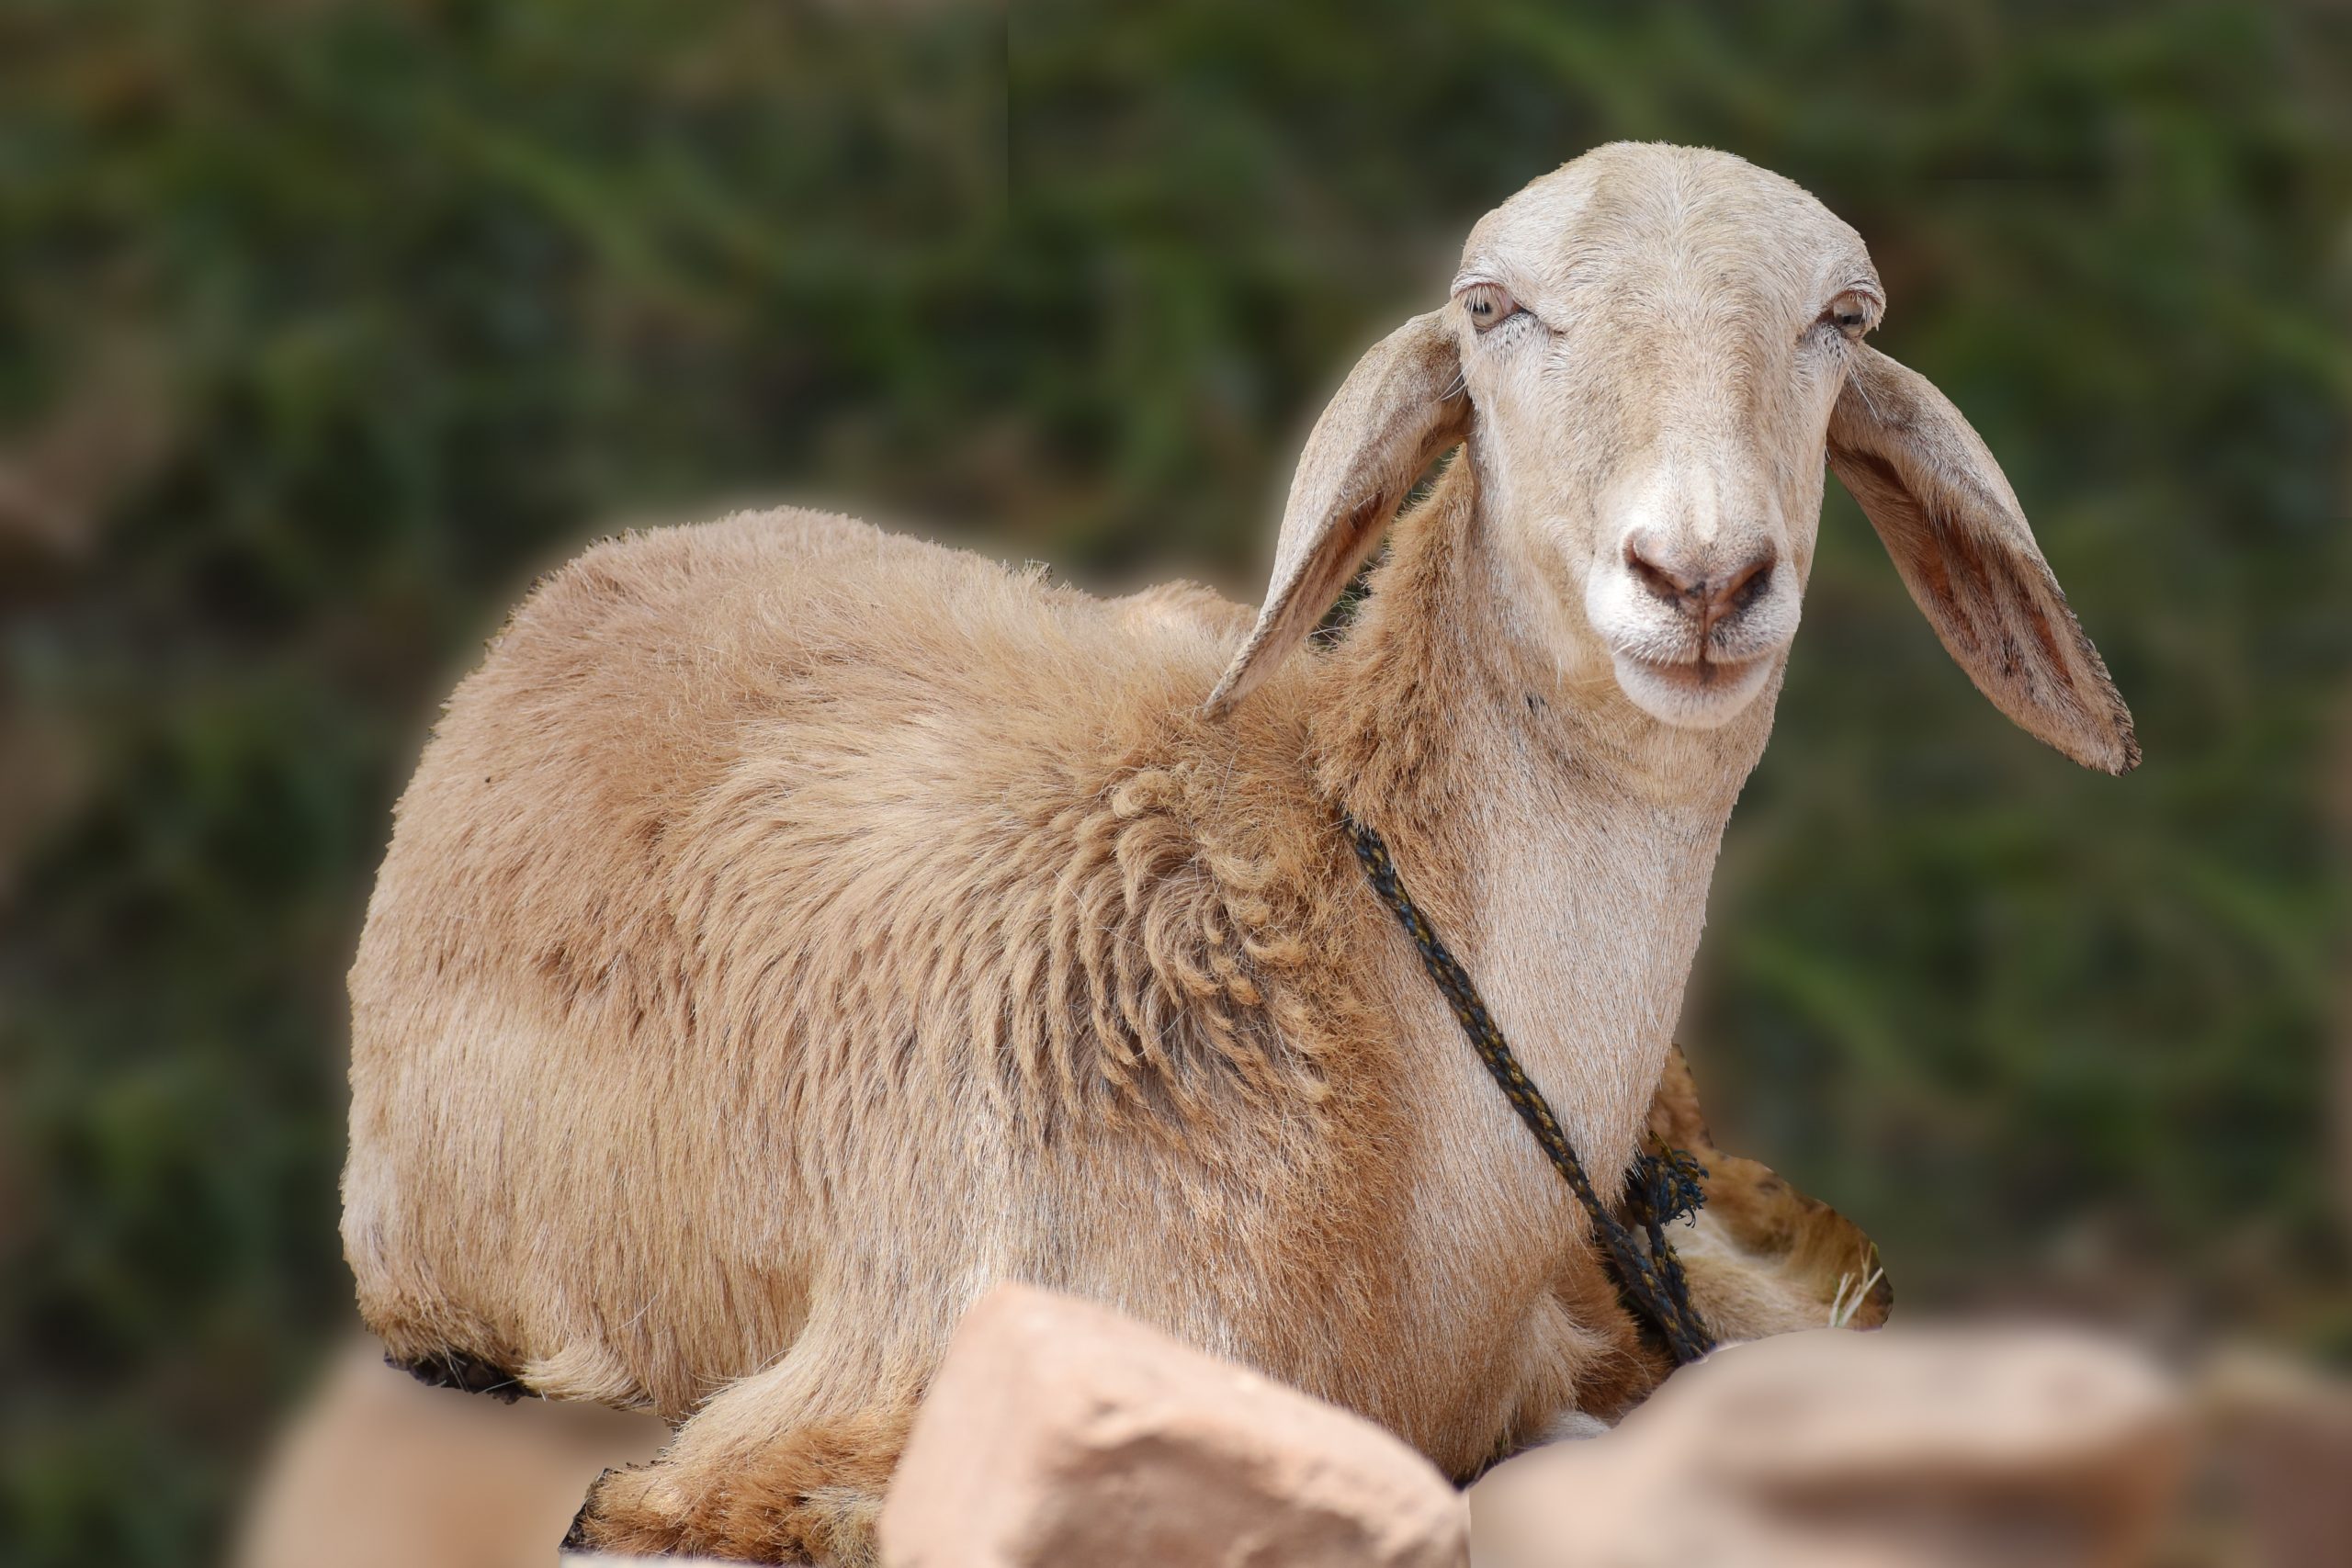 A pet goat